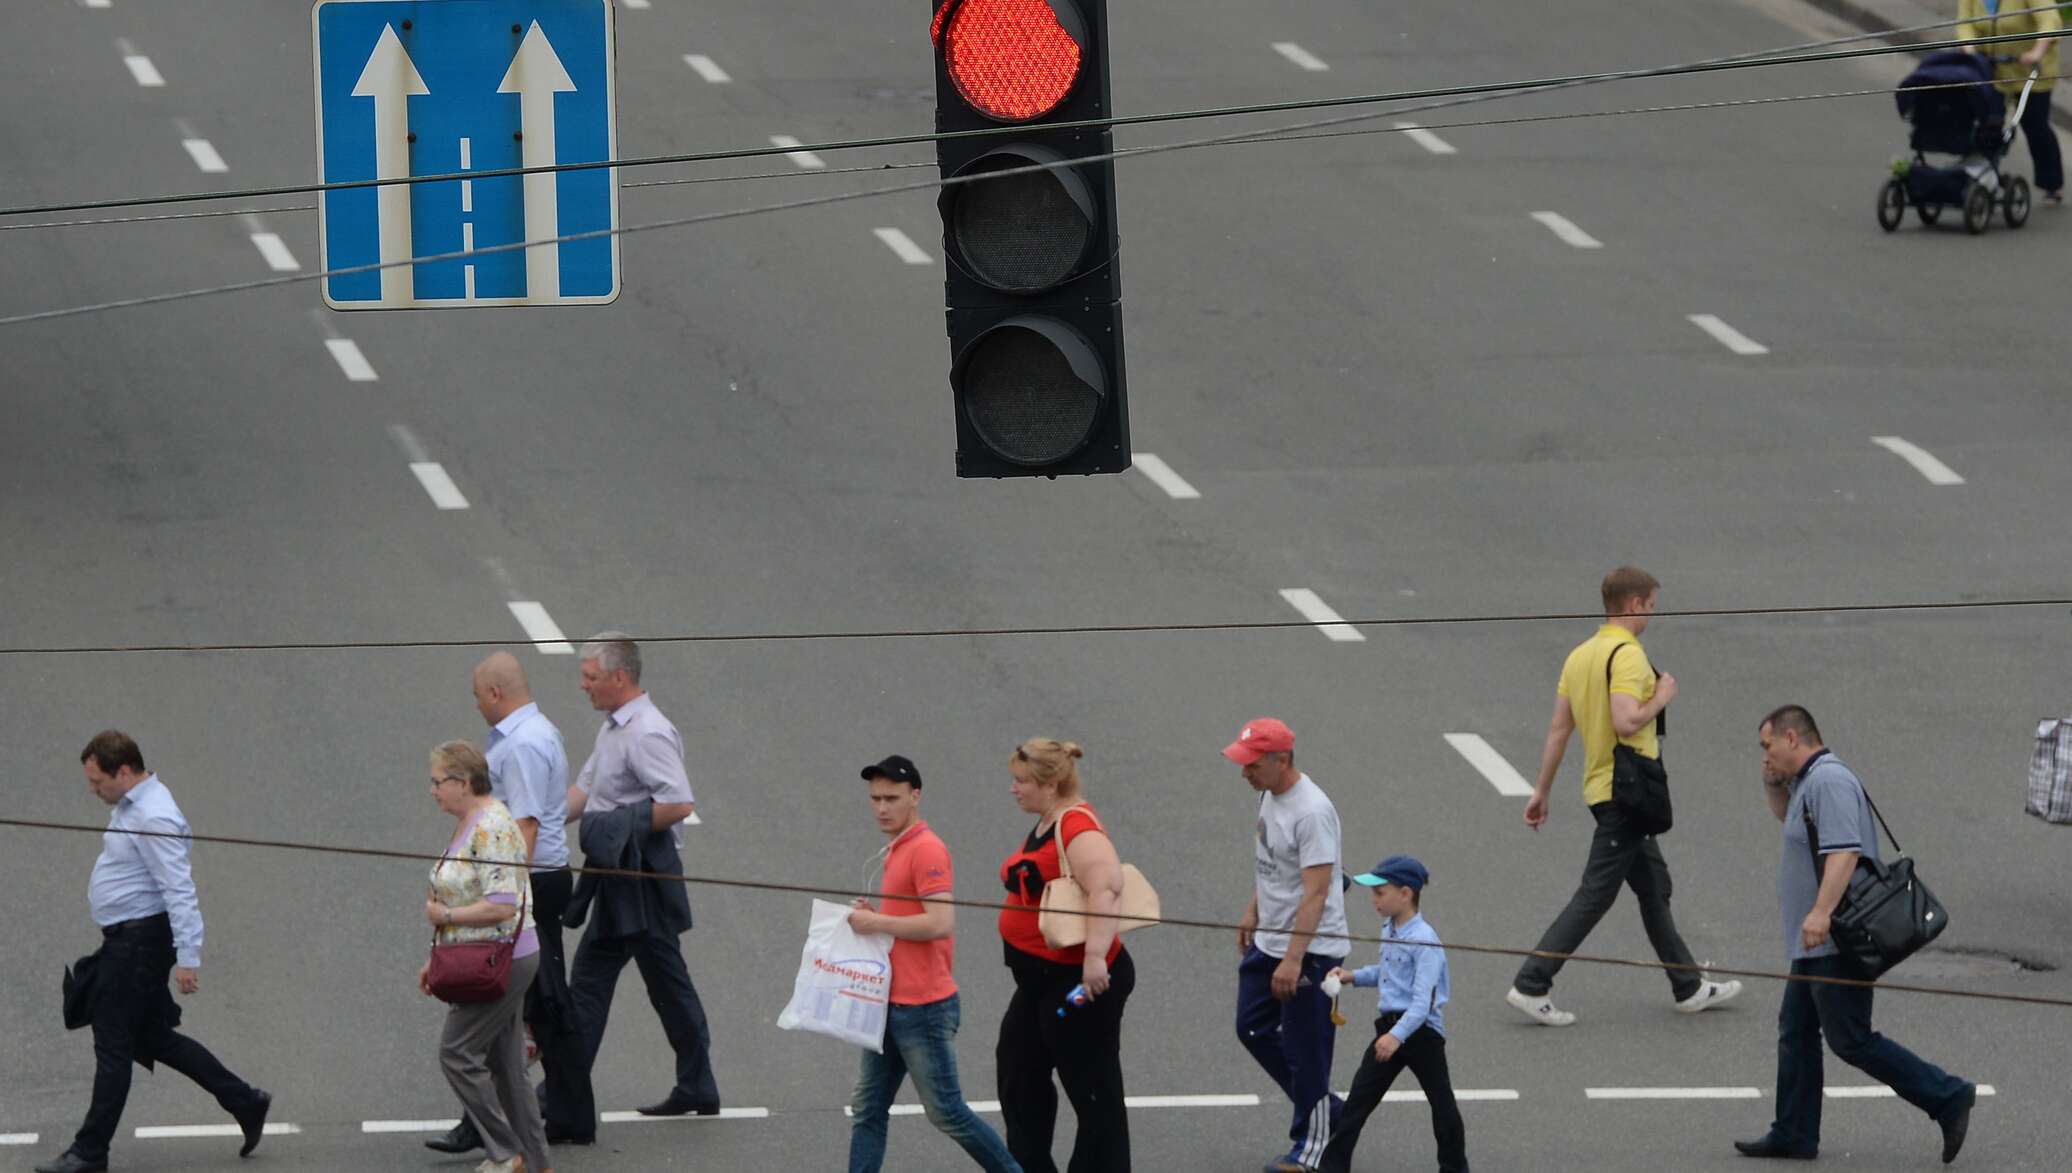 Переход на красный пешеход